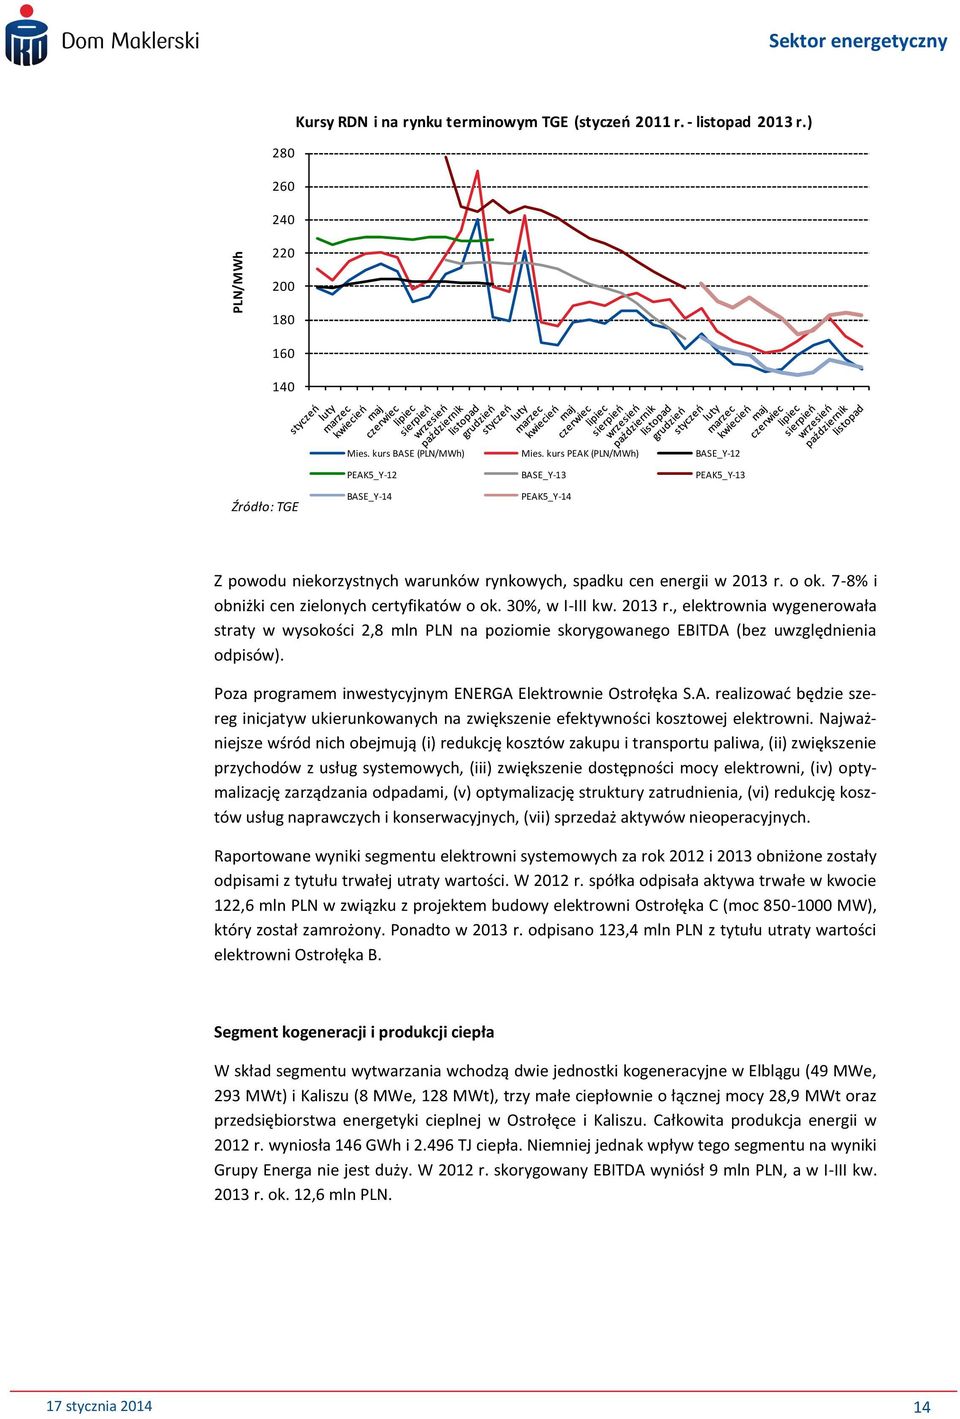 7-8% i obniżki cen zielonych certyfikatów o ok. 30%, w I-III kw. 2013 r., elektrownia wygenerowała straty w wysokości 2,8 mln PLN na poziomie skorygowanego EBITDA (bez uwzględnienia odpisów).